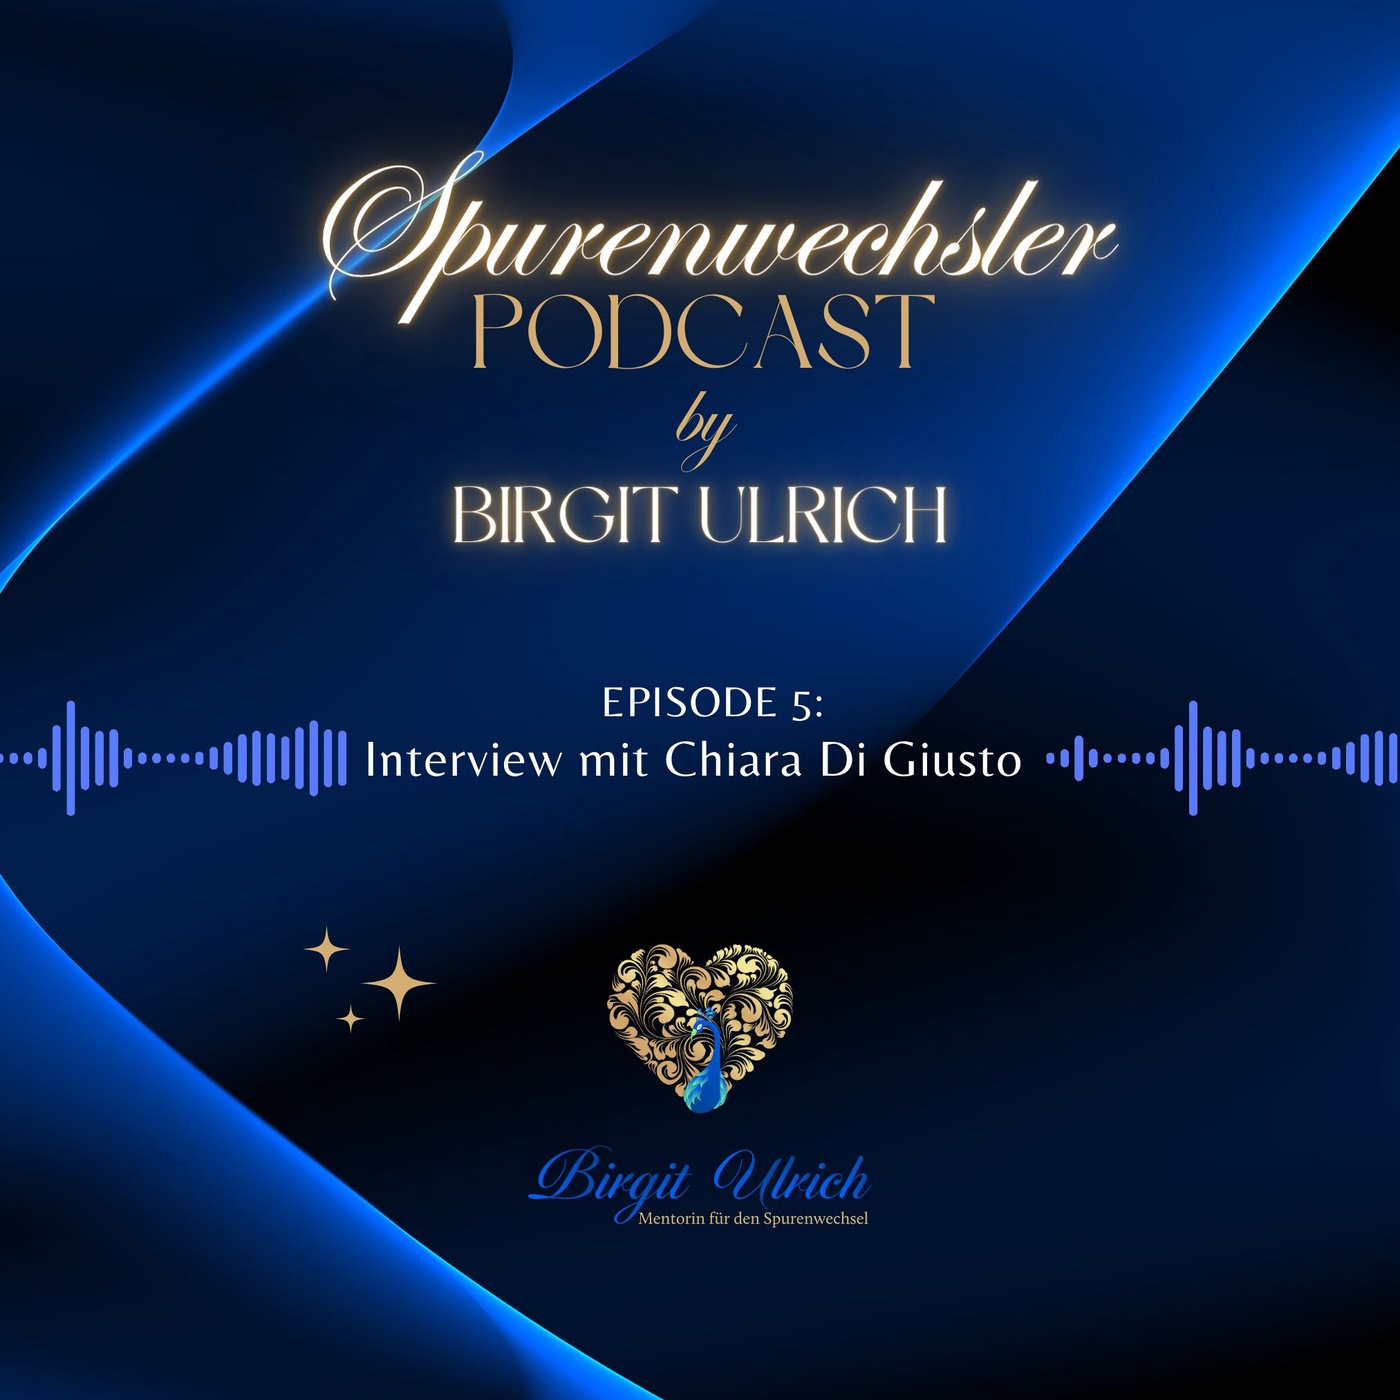 Spurenwechsler Podcast - Episode #5 mit Birgit und Chiara Di Giusto